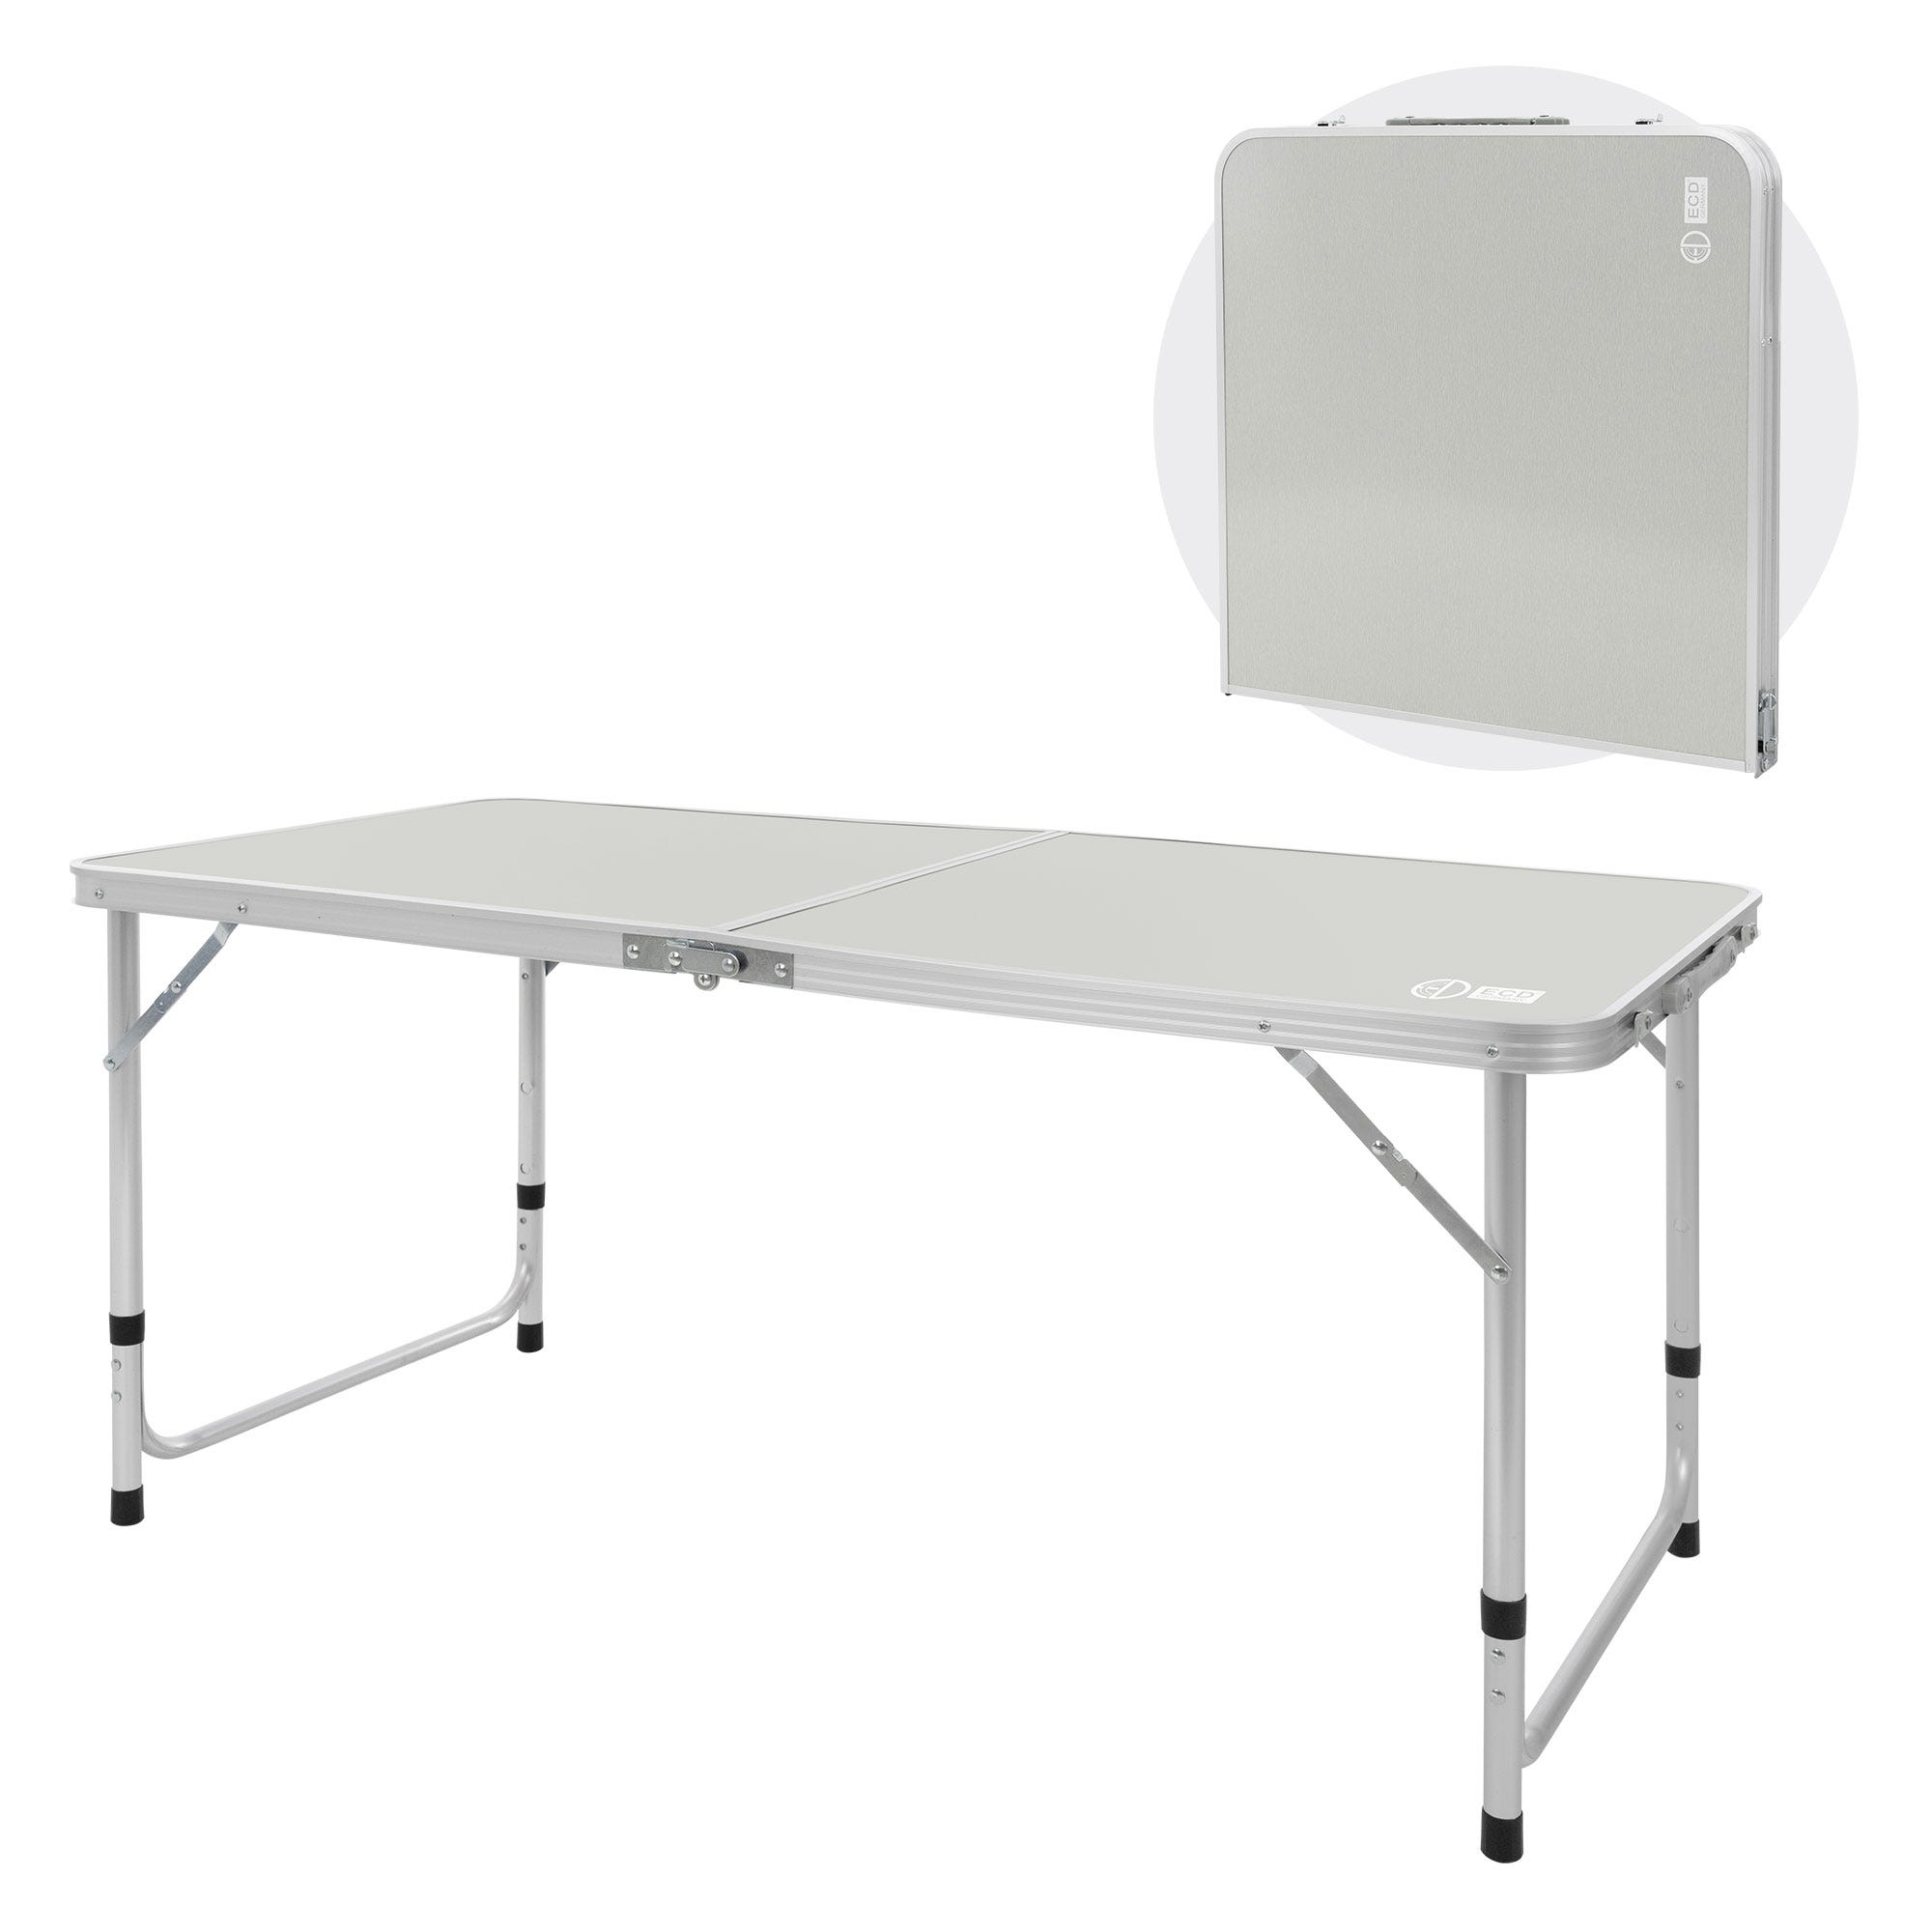 Table de camping pliante en aluminium, 910 g, poids max. supporté